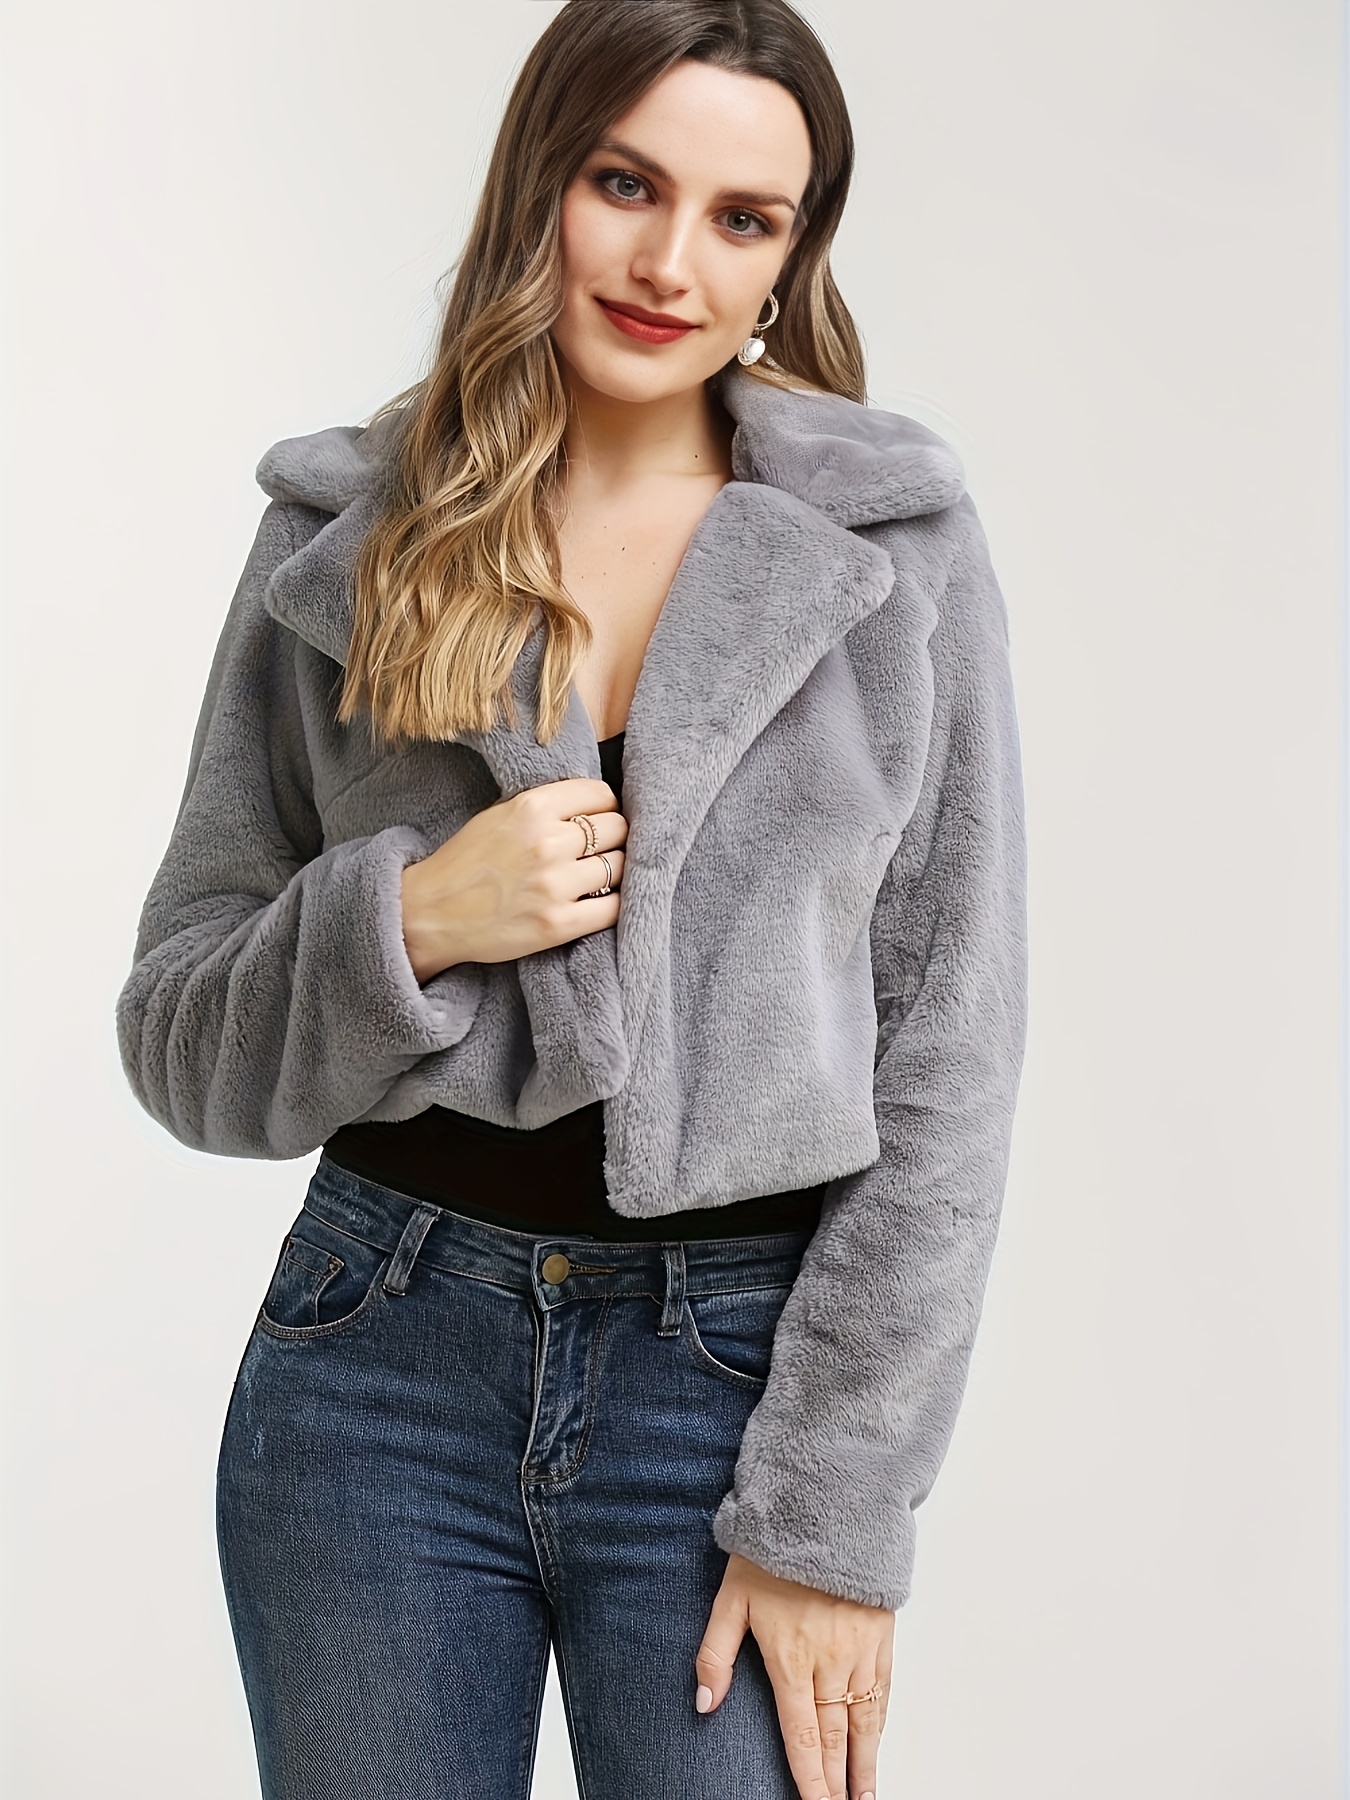 Unique Bargains Women's Winter Fashion Loose Faux Fur Coat